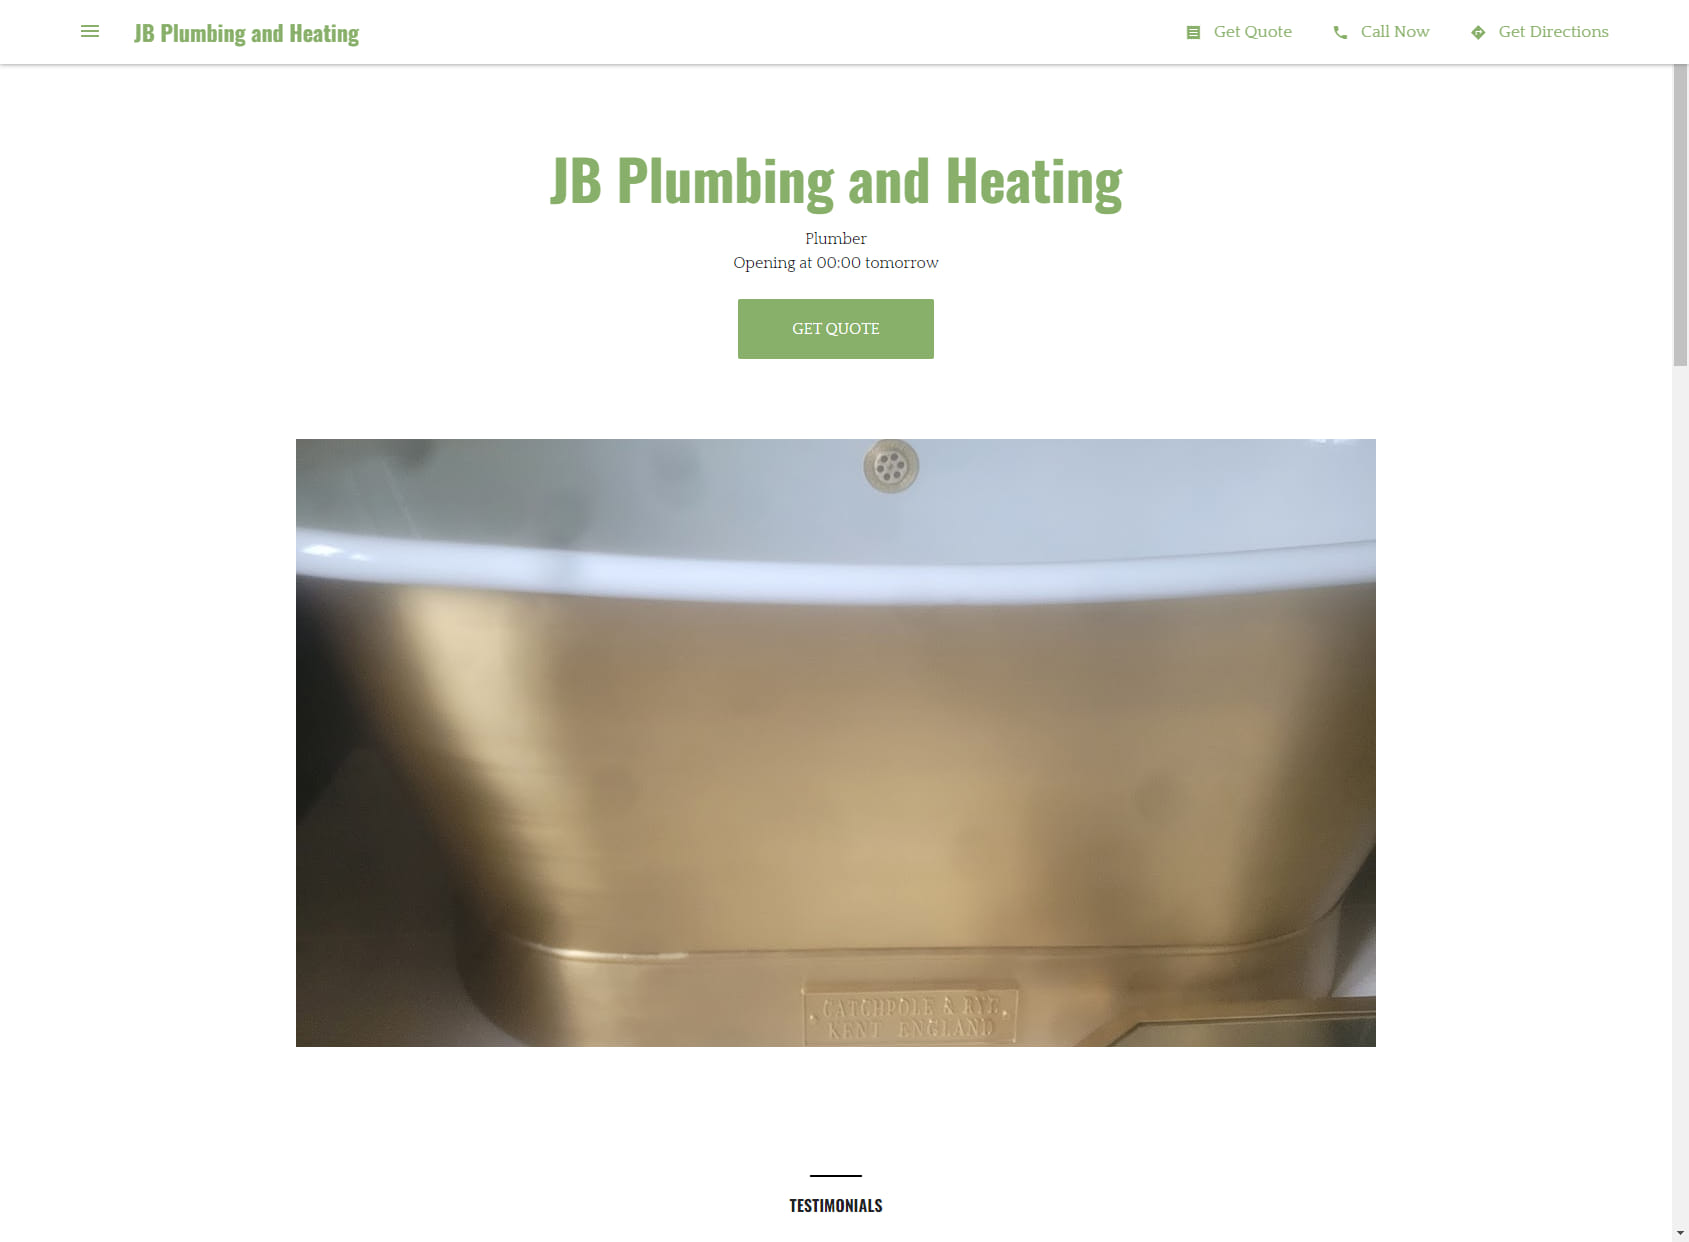 JB Plumbing and Heating